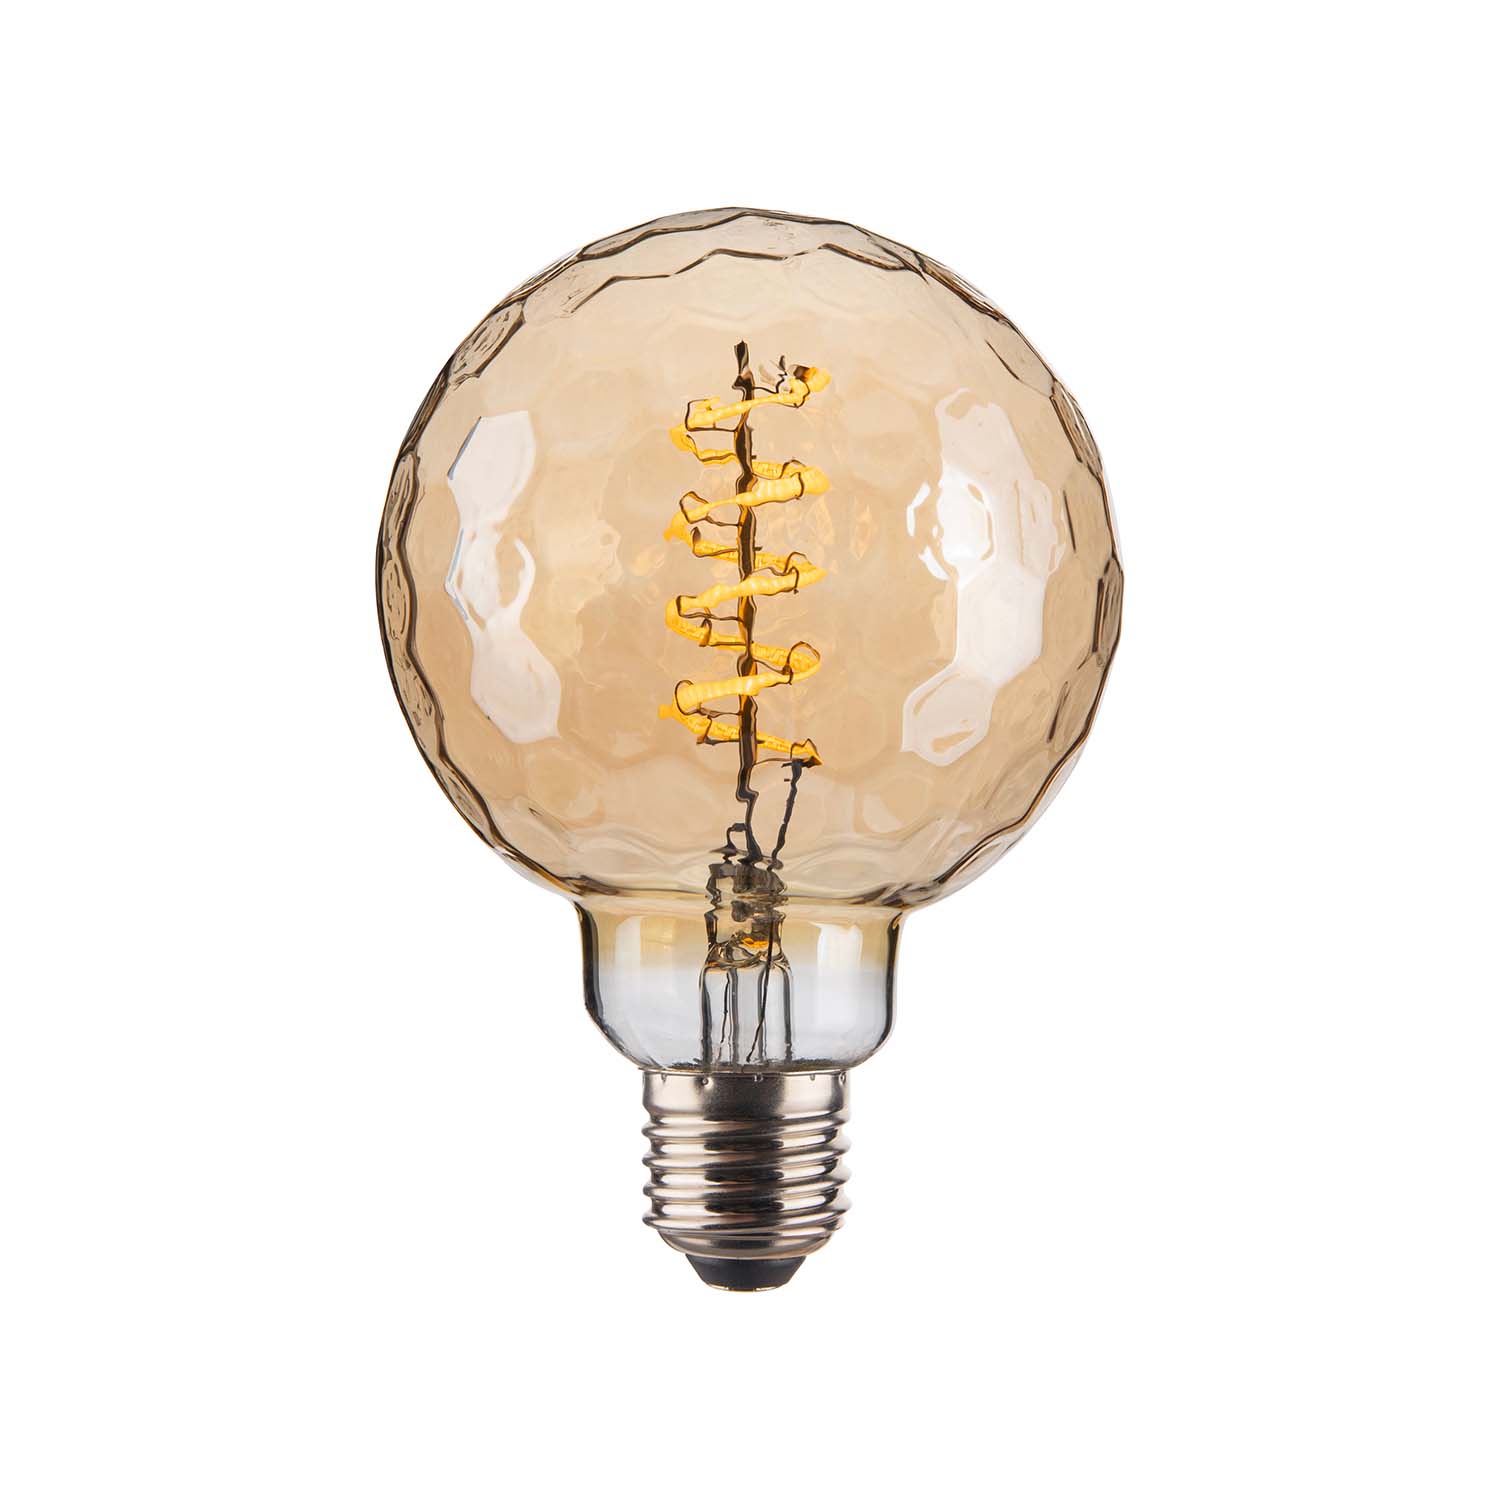 Geo - Ampoule LED E27 effet martelé